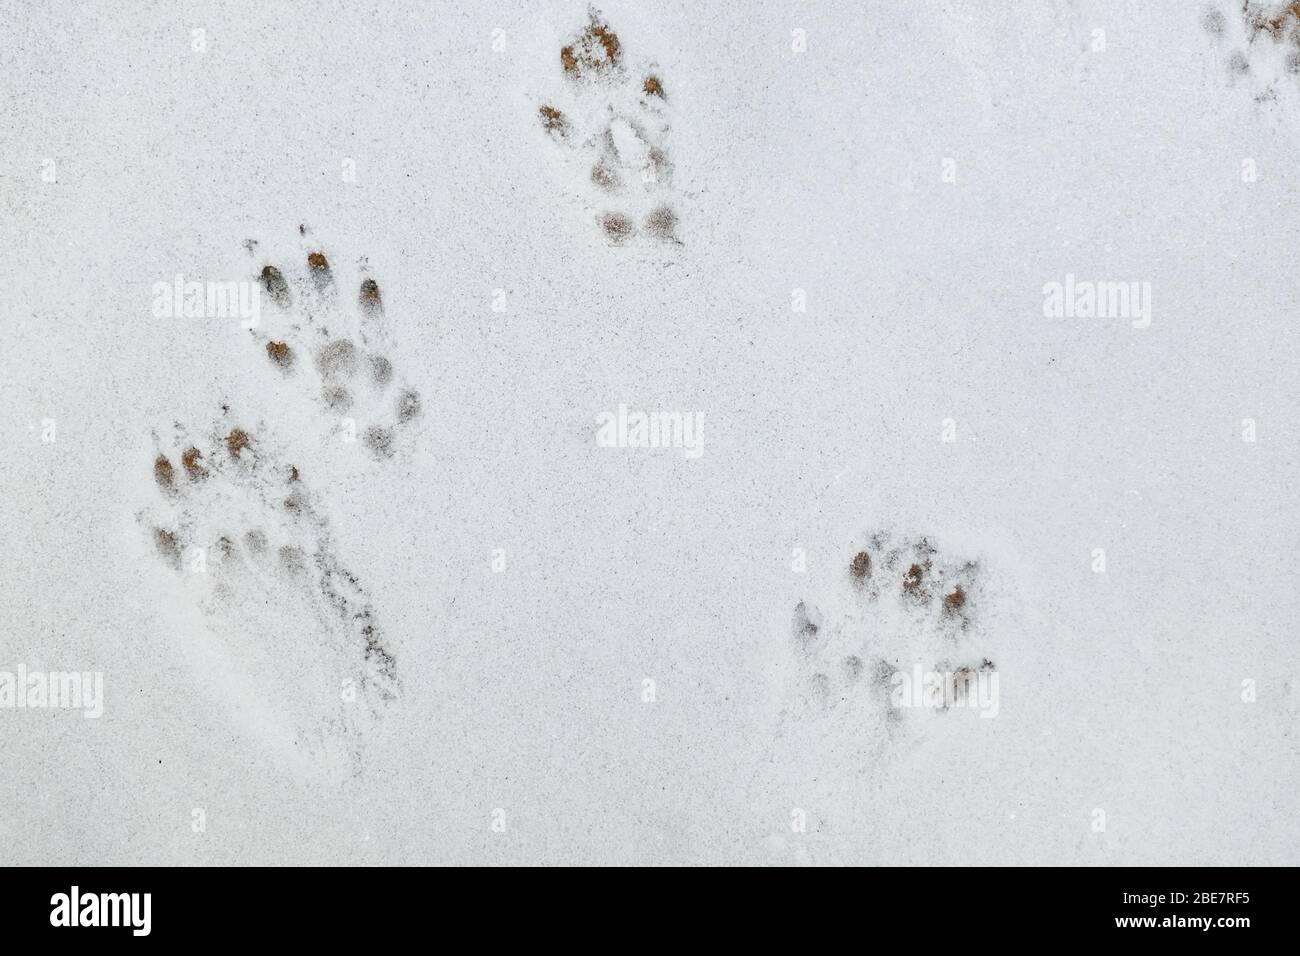 Empreintes de l'écureuil rouge européen sur la neige blanche Banque D'Images